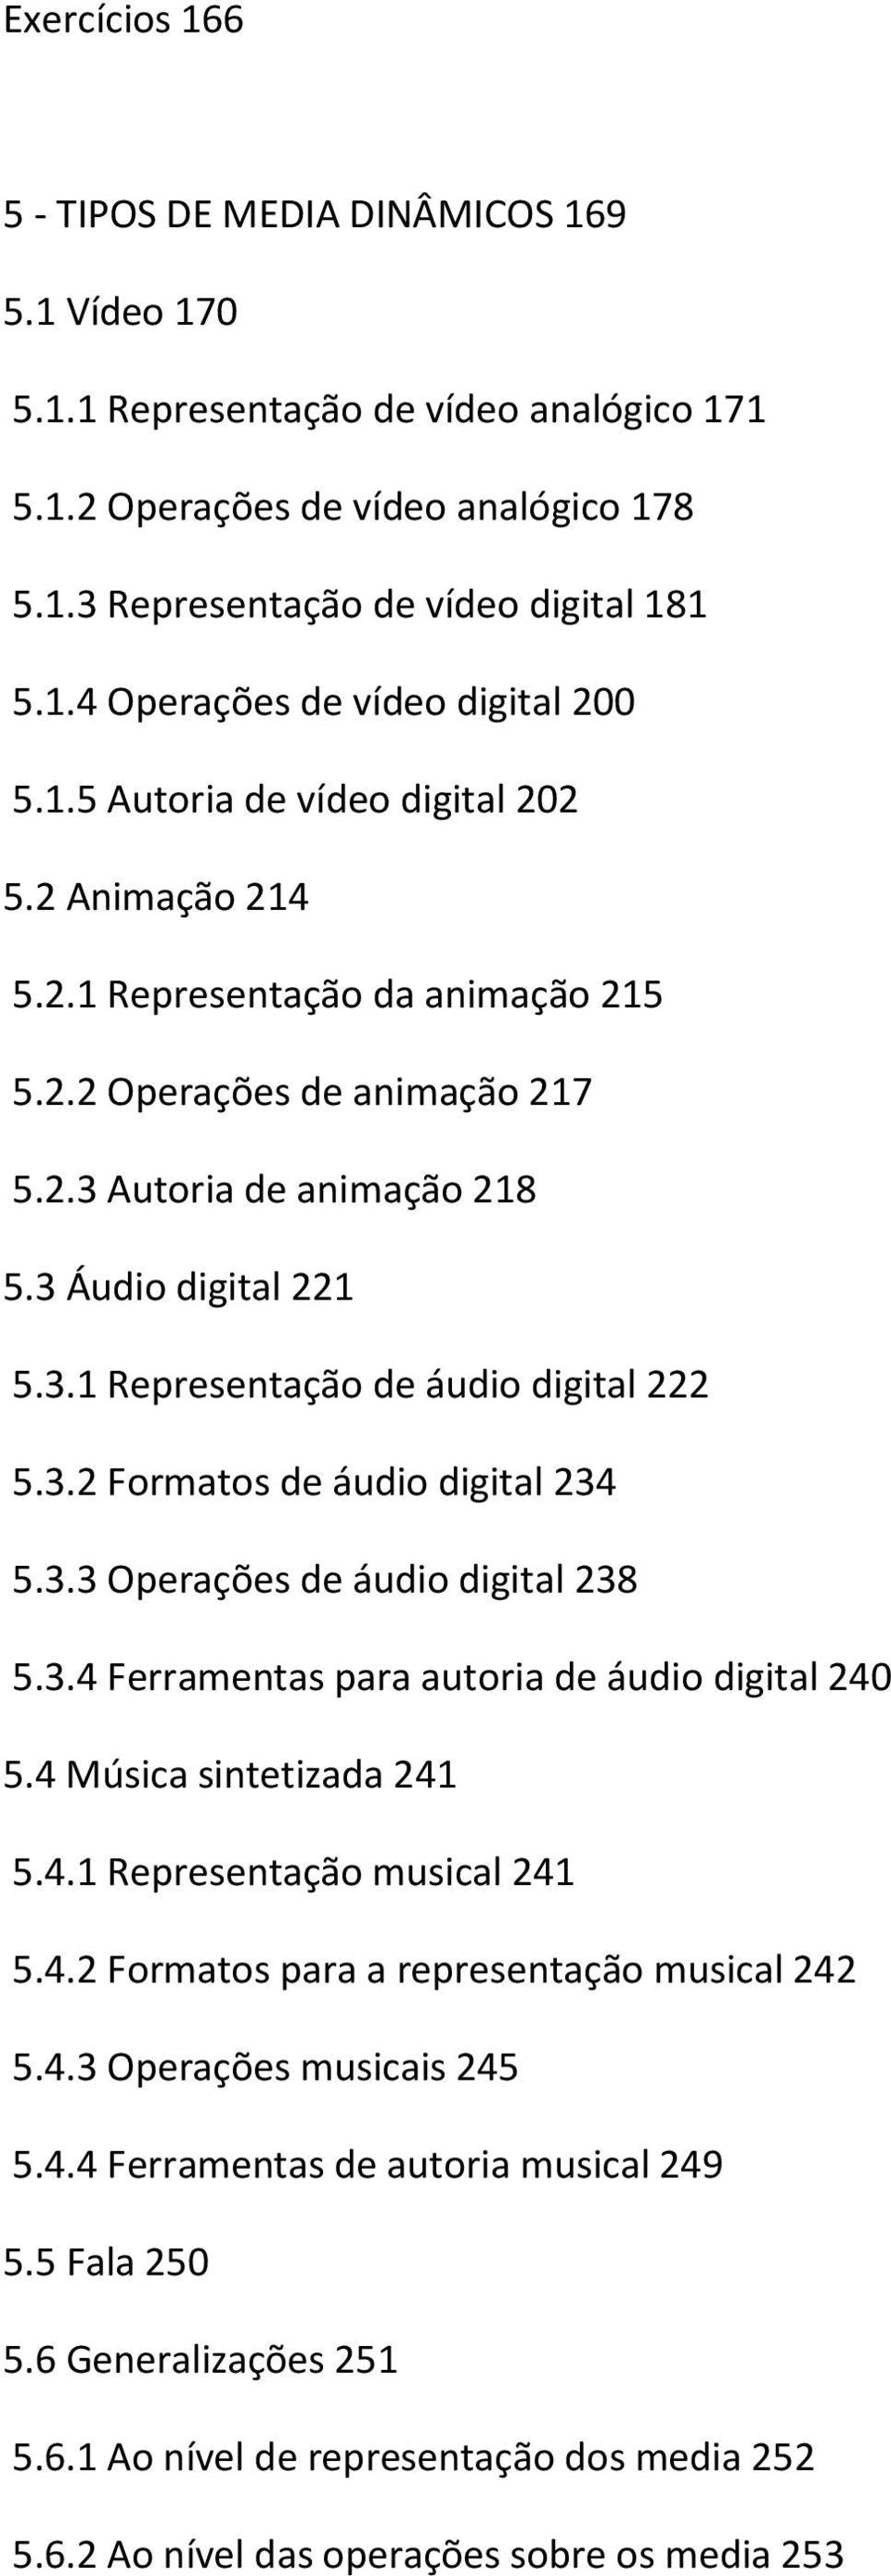 3.2 Formatos de áudio digital 234 5.3.3 Operações de áudio digital 238 5.3.4 Ferramentas para autoria de áudio digital 240 5.4 Música sintetizada 241 5.4.1 Representação musical 241 5.4.2 Formatos para a representação musical 242 5.